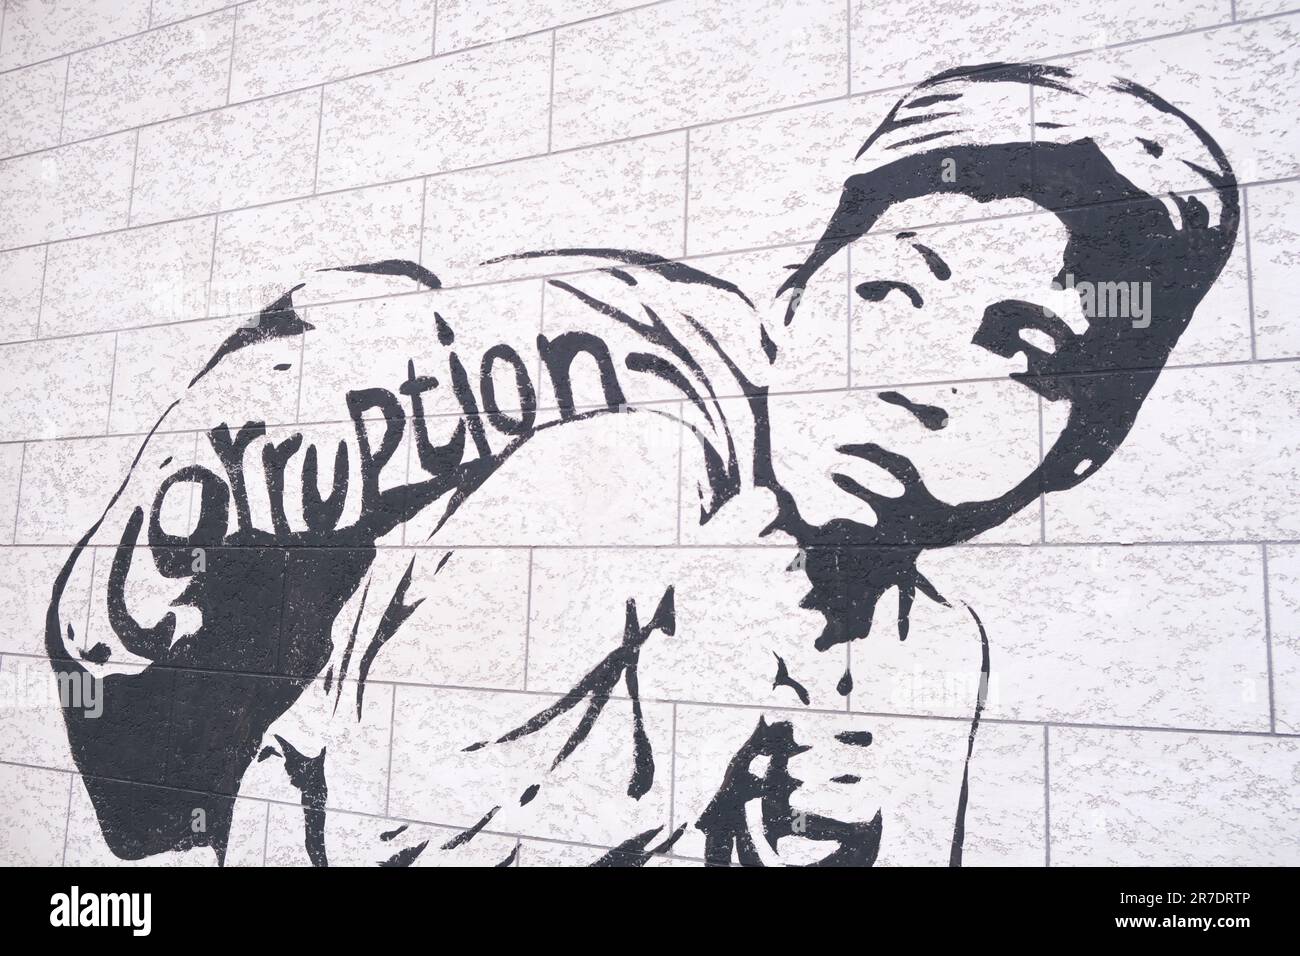 Ein politisches Spray malte Graffiti an einer Wand und kritisierte die Korruption im Land. In Taschkent, Usbekistan. Stockfoto